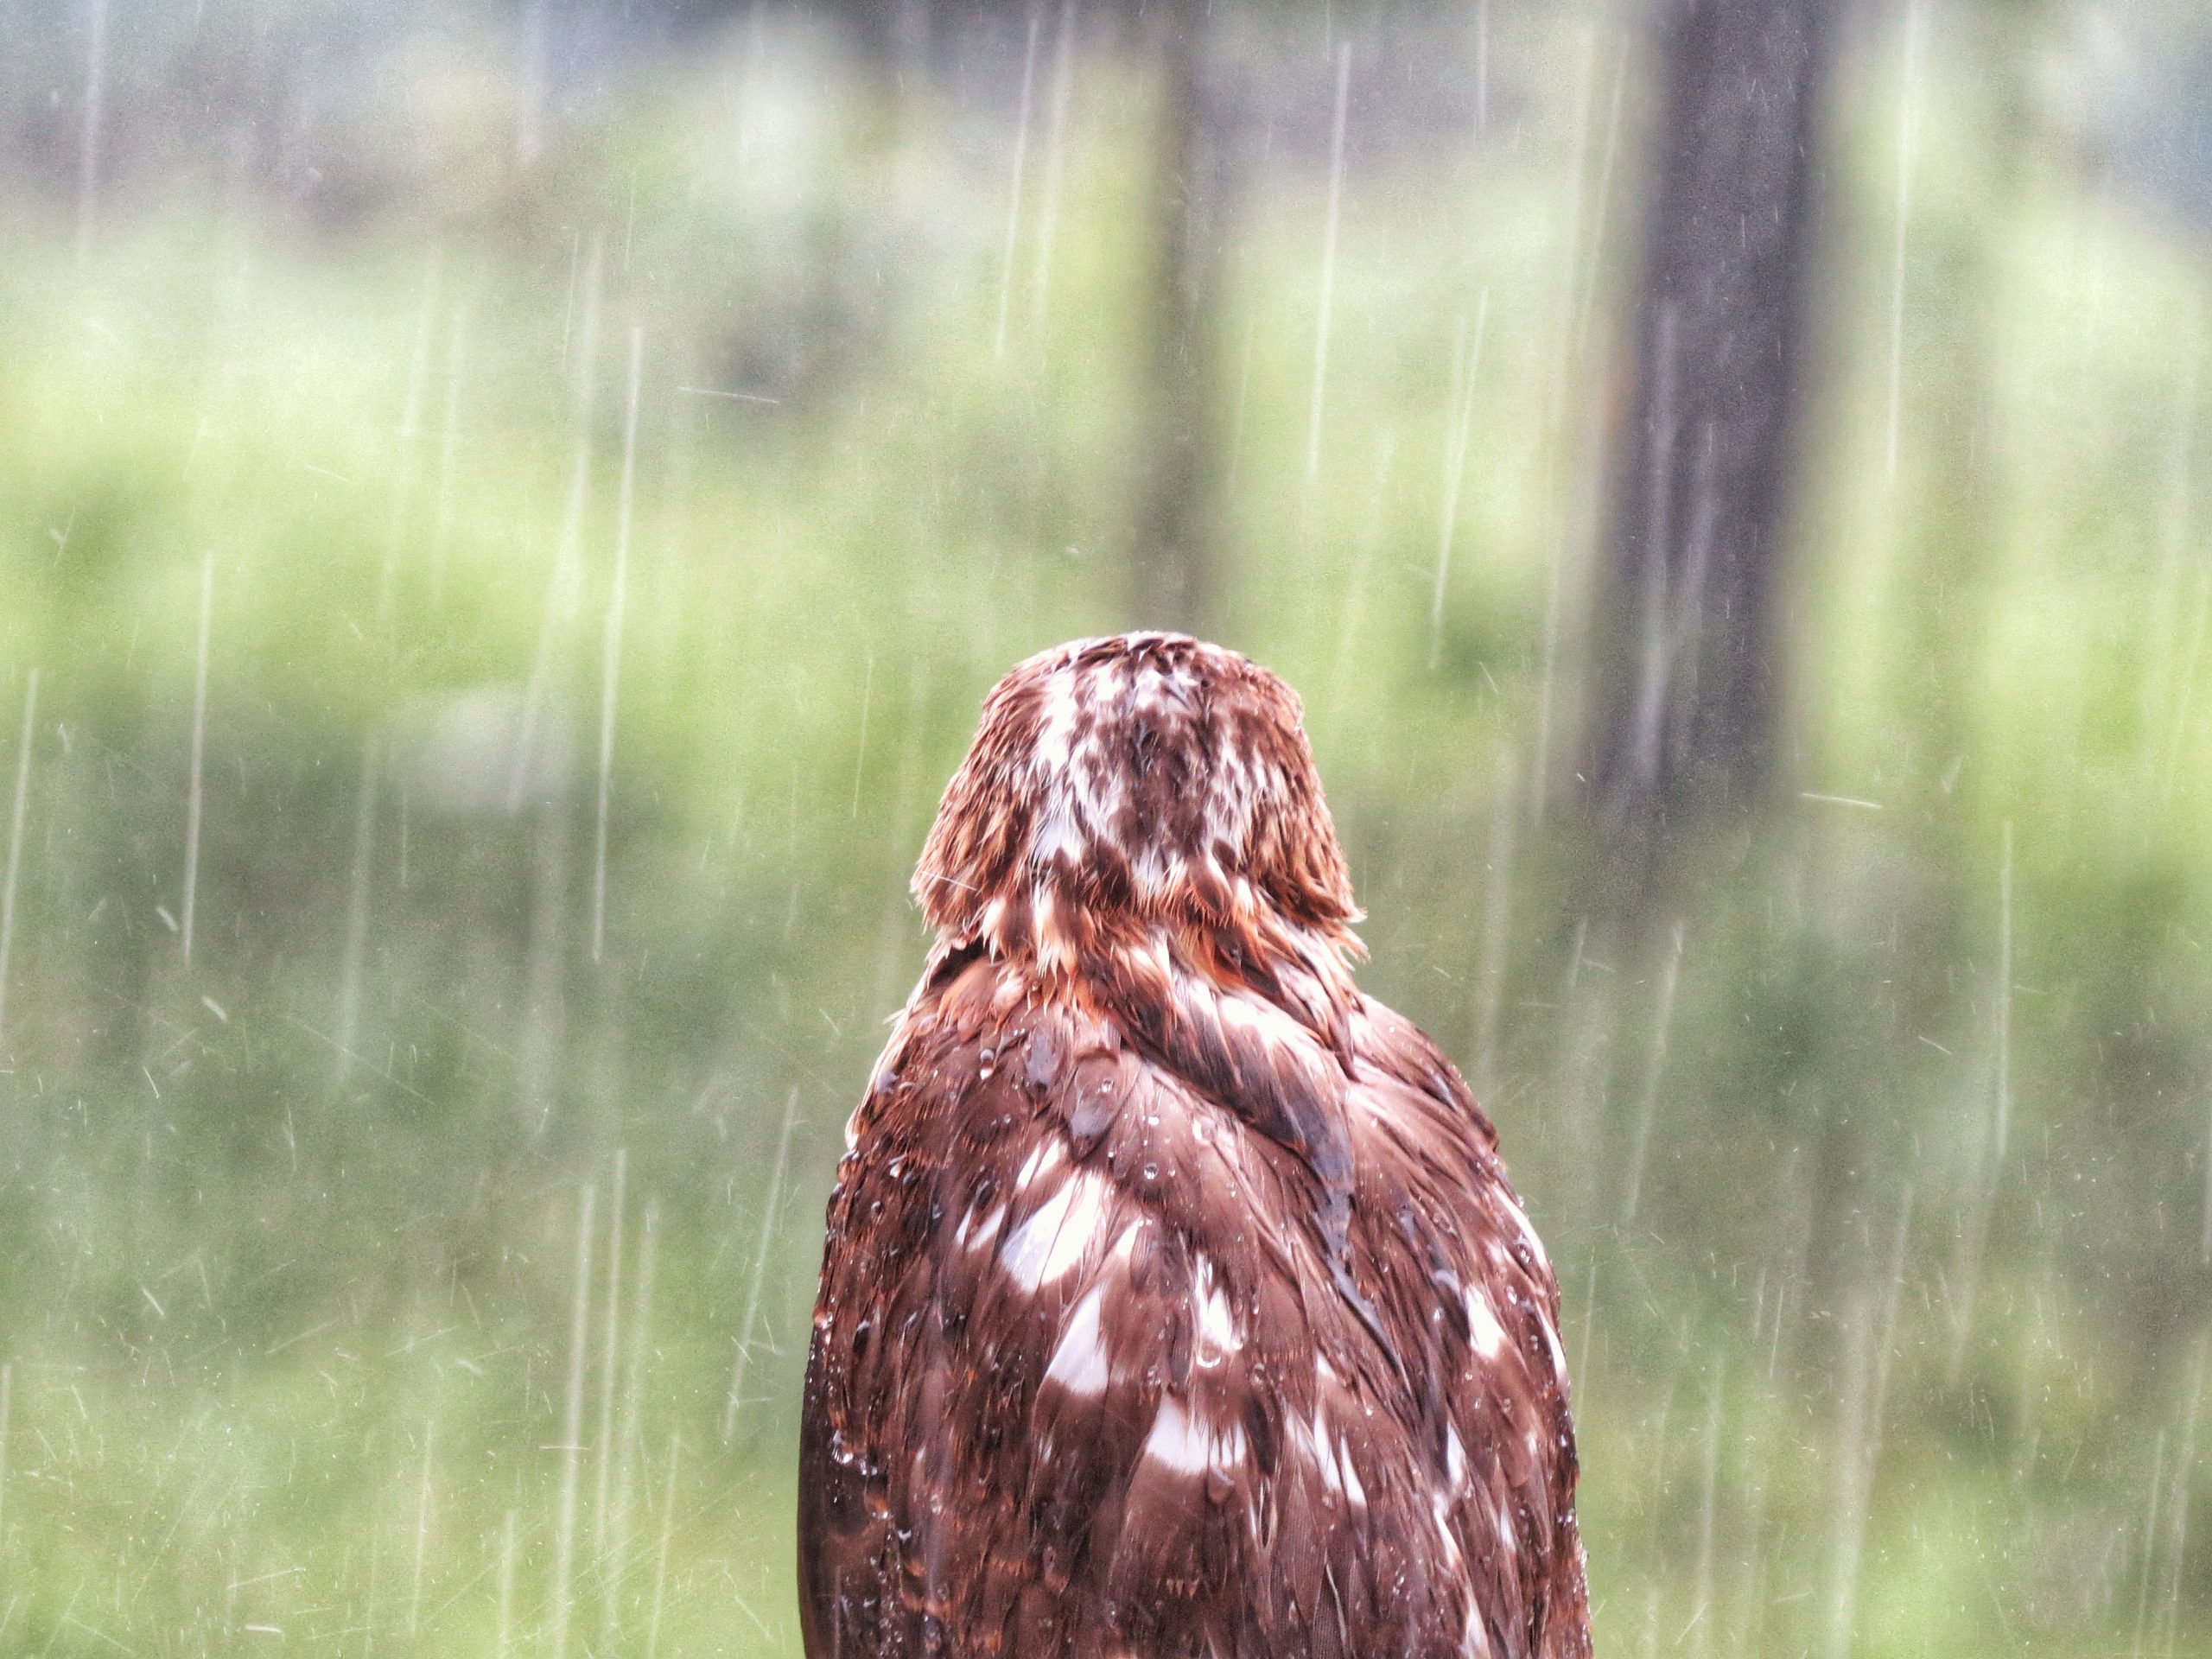 An owl in rain